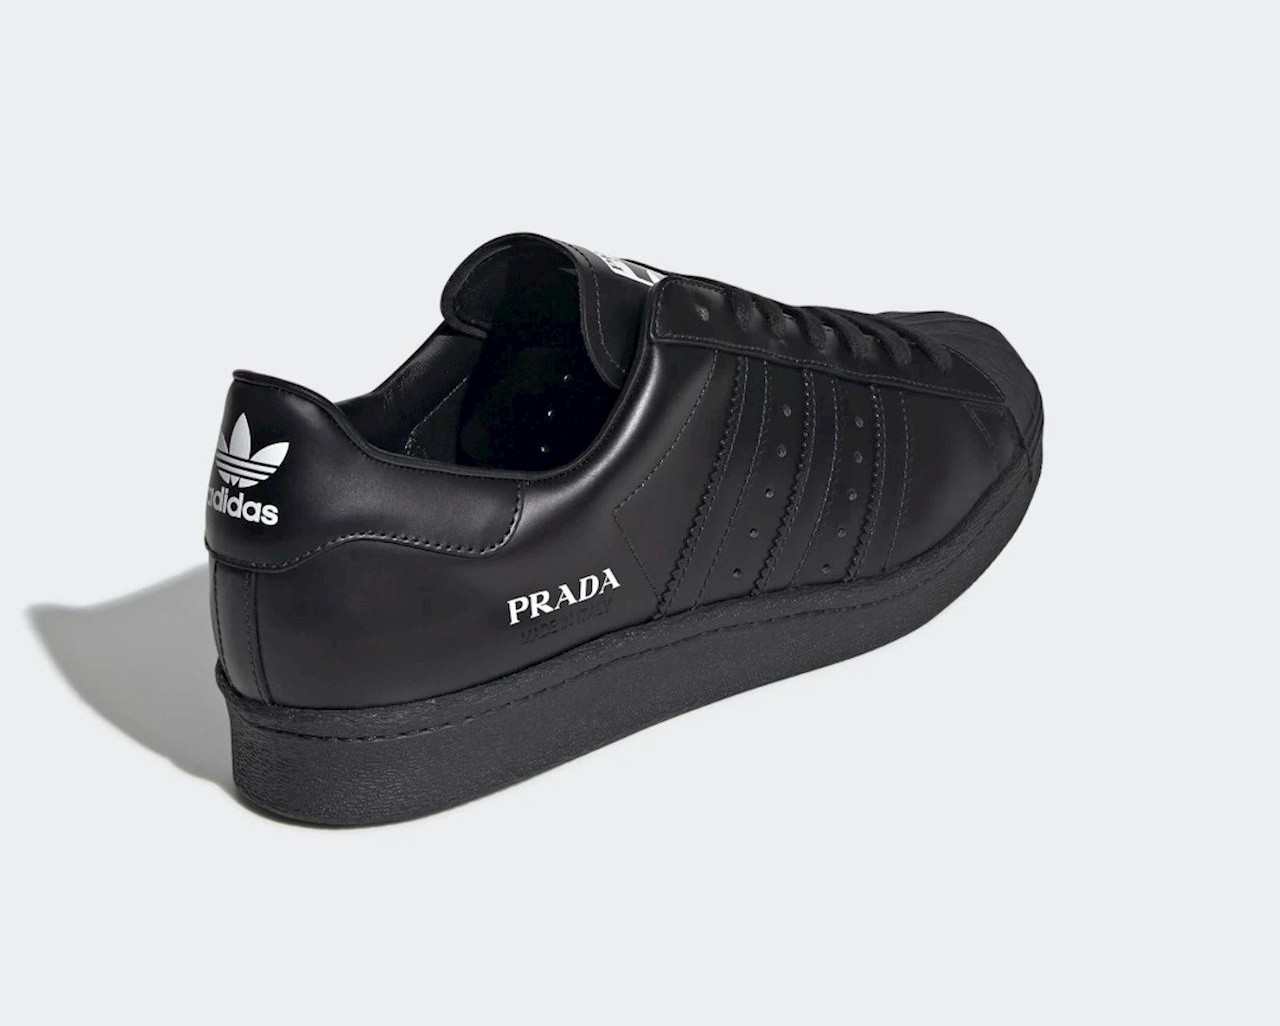 formula Aggregate equation Ariss-euShops - Adidas logo Prada x Superstar Core Black Casual Shoes FW6679  - logo Prada Eyewear mirrored lens sunglasses